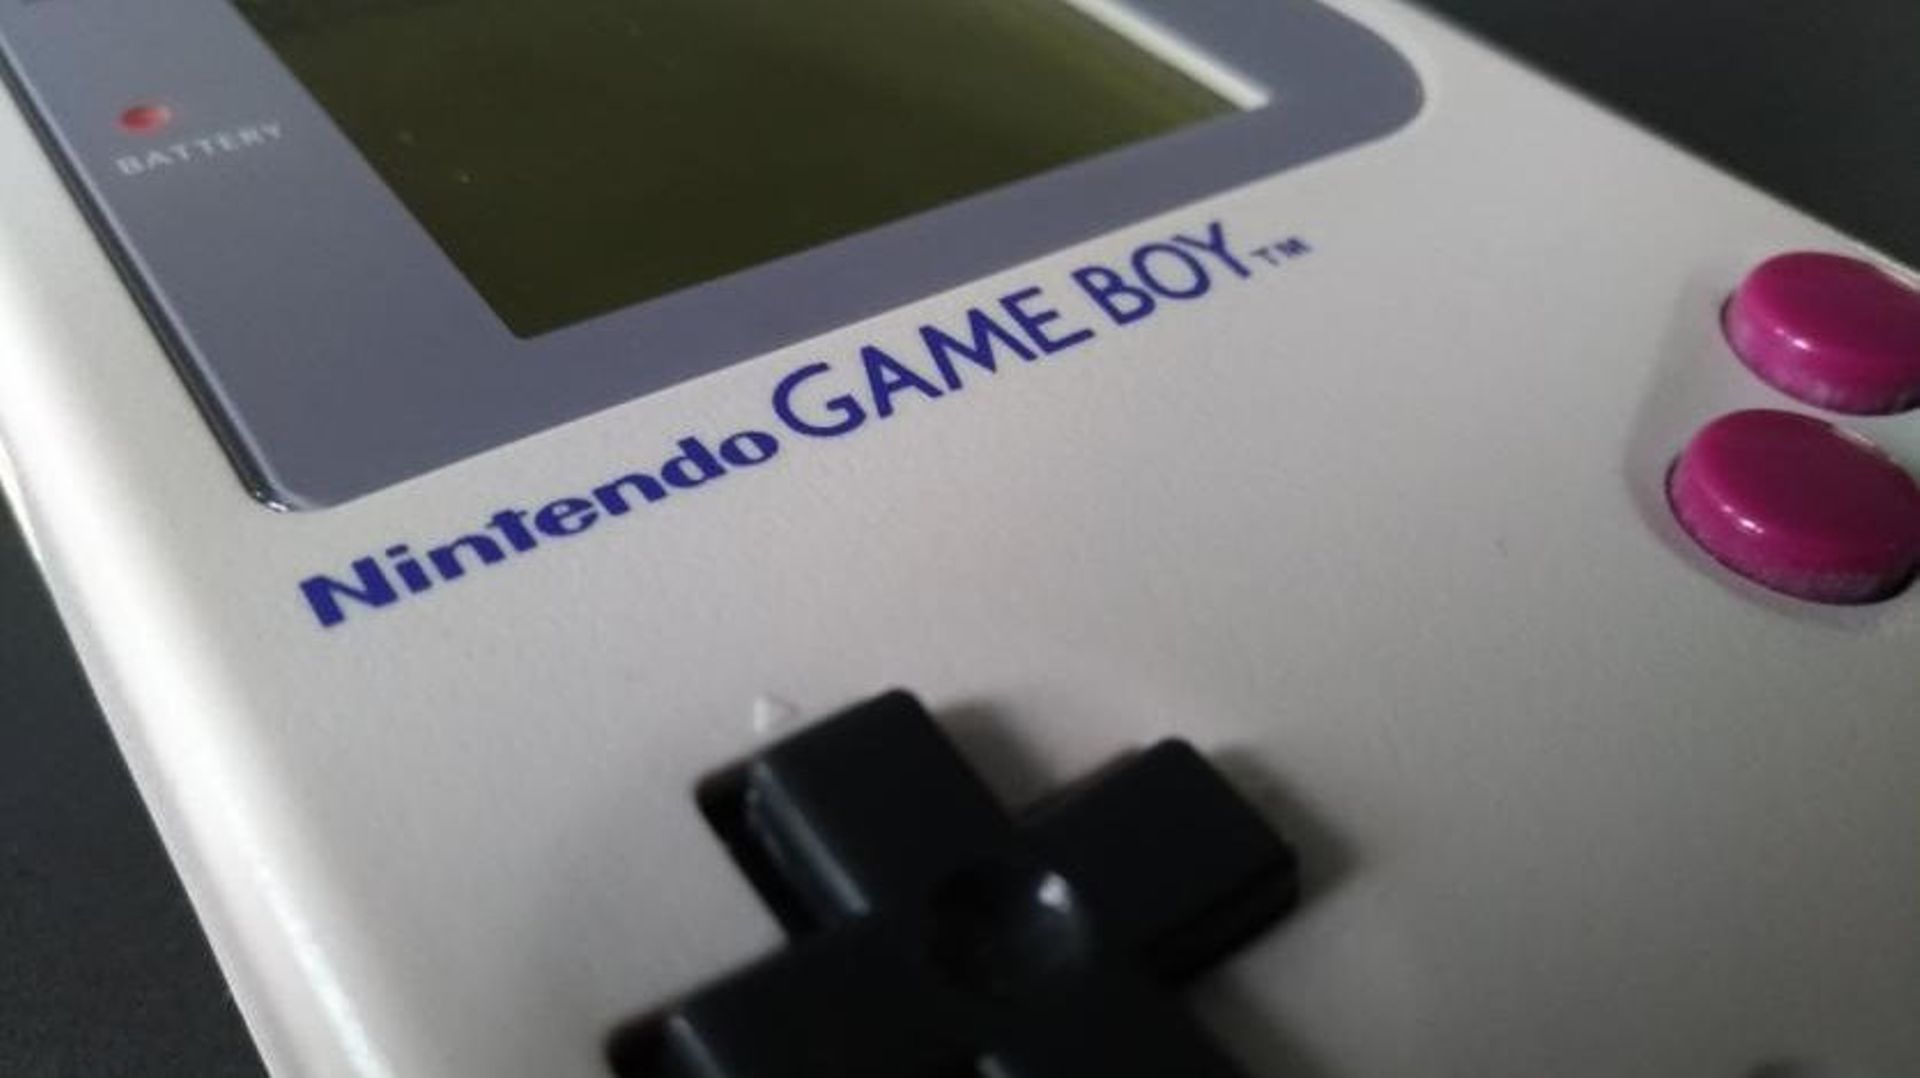 Trente ans après sa sortie, que reste-t-il de la Game Boy ?